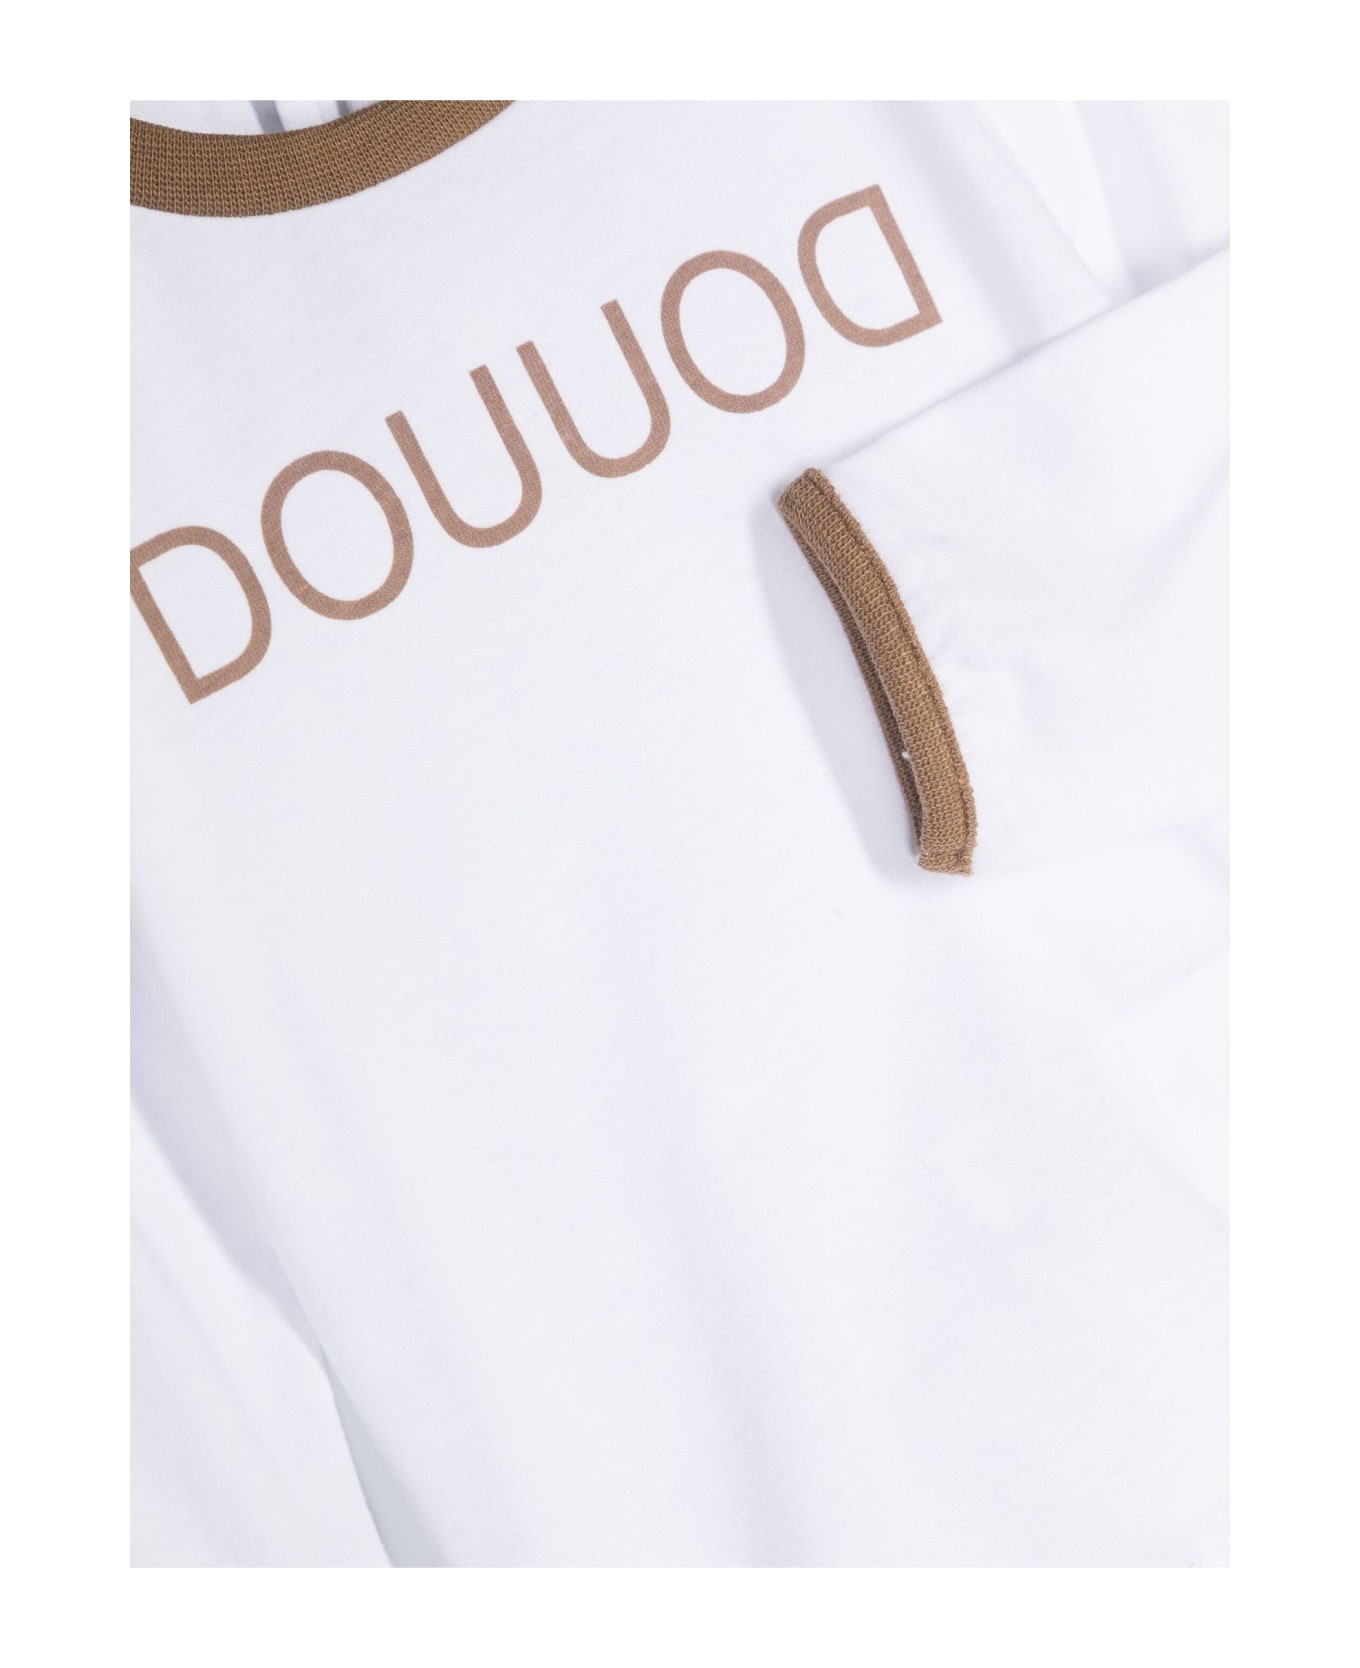 Douuod Dou Dou T-shirts And Polos White - White